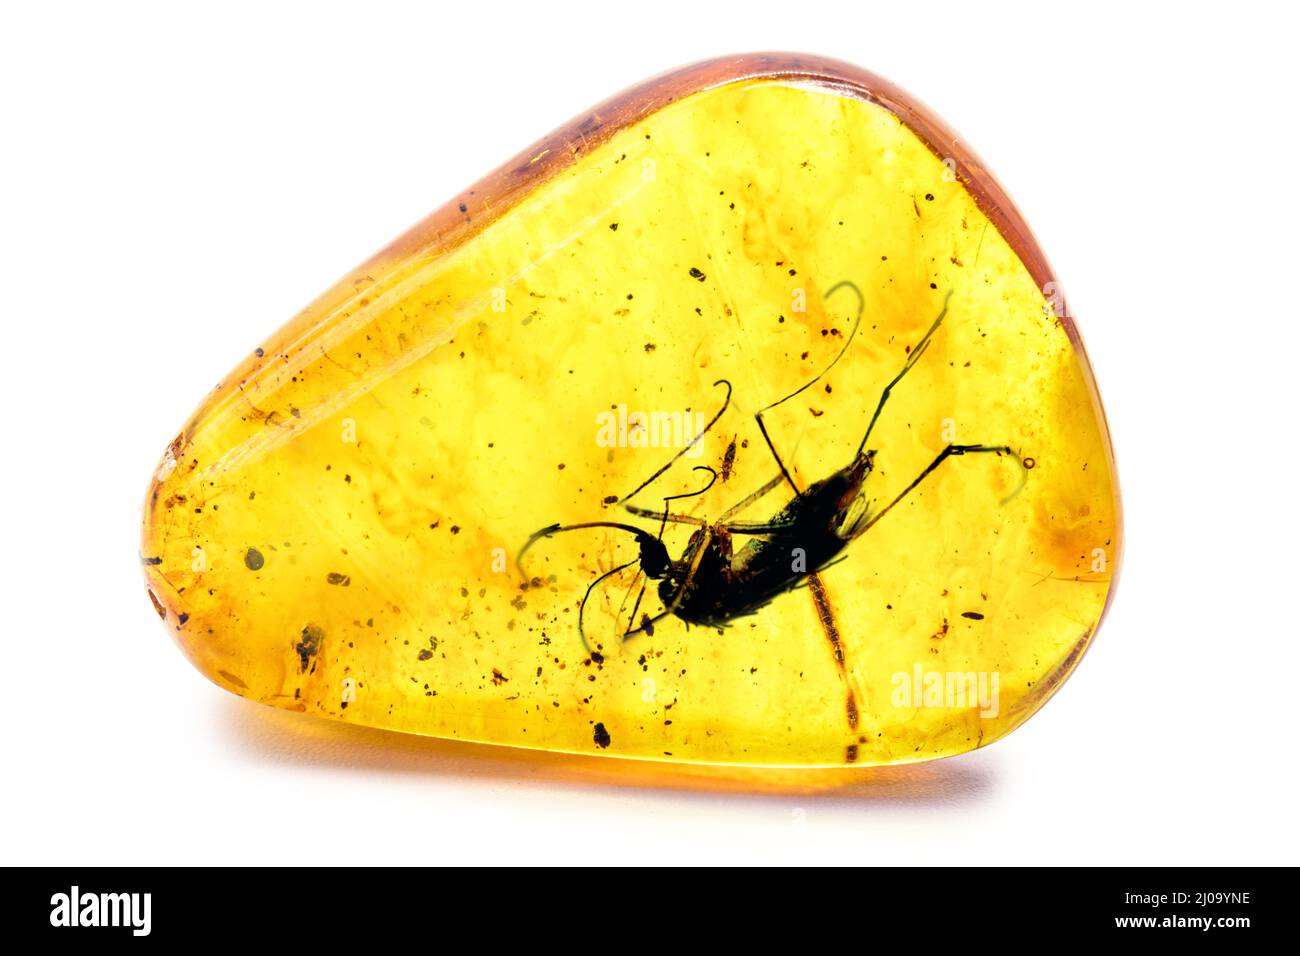 Ambra con insetto preistorico conservato, zanzara con sangue o DNA conservato in ambra Foto Stock